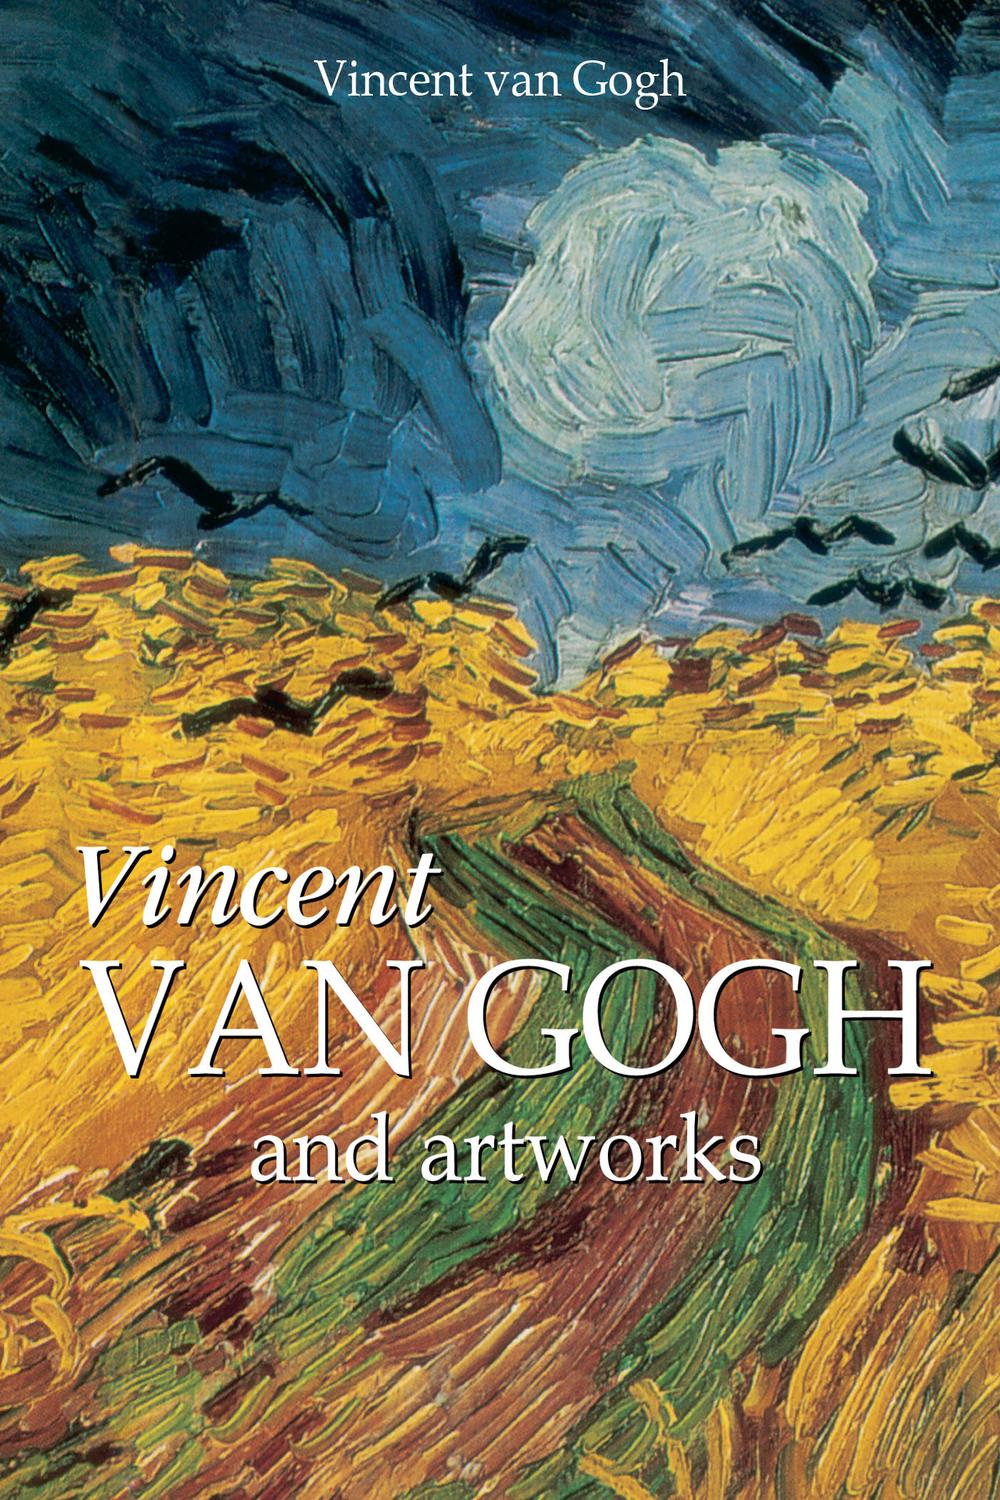 Vincent Van Gogh and artworks - Vincent van Gogh